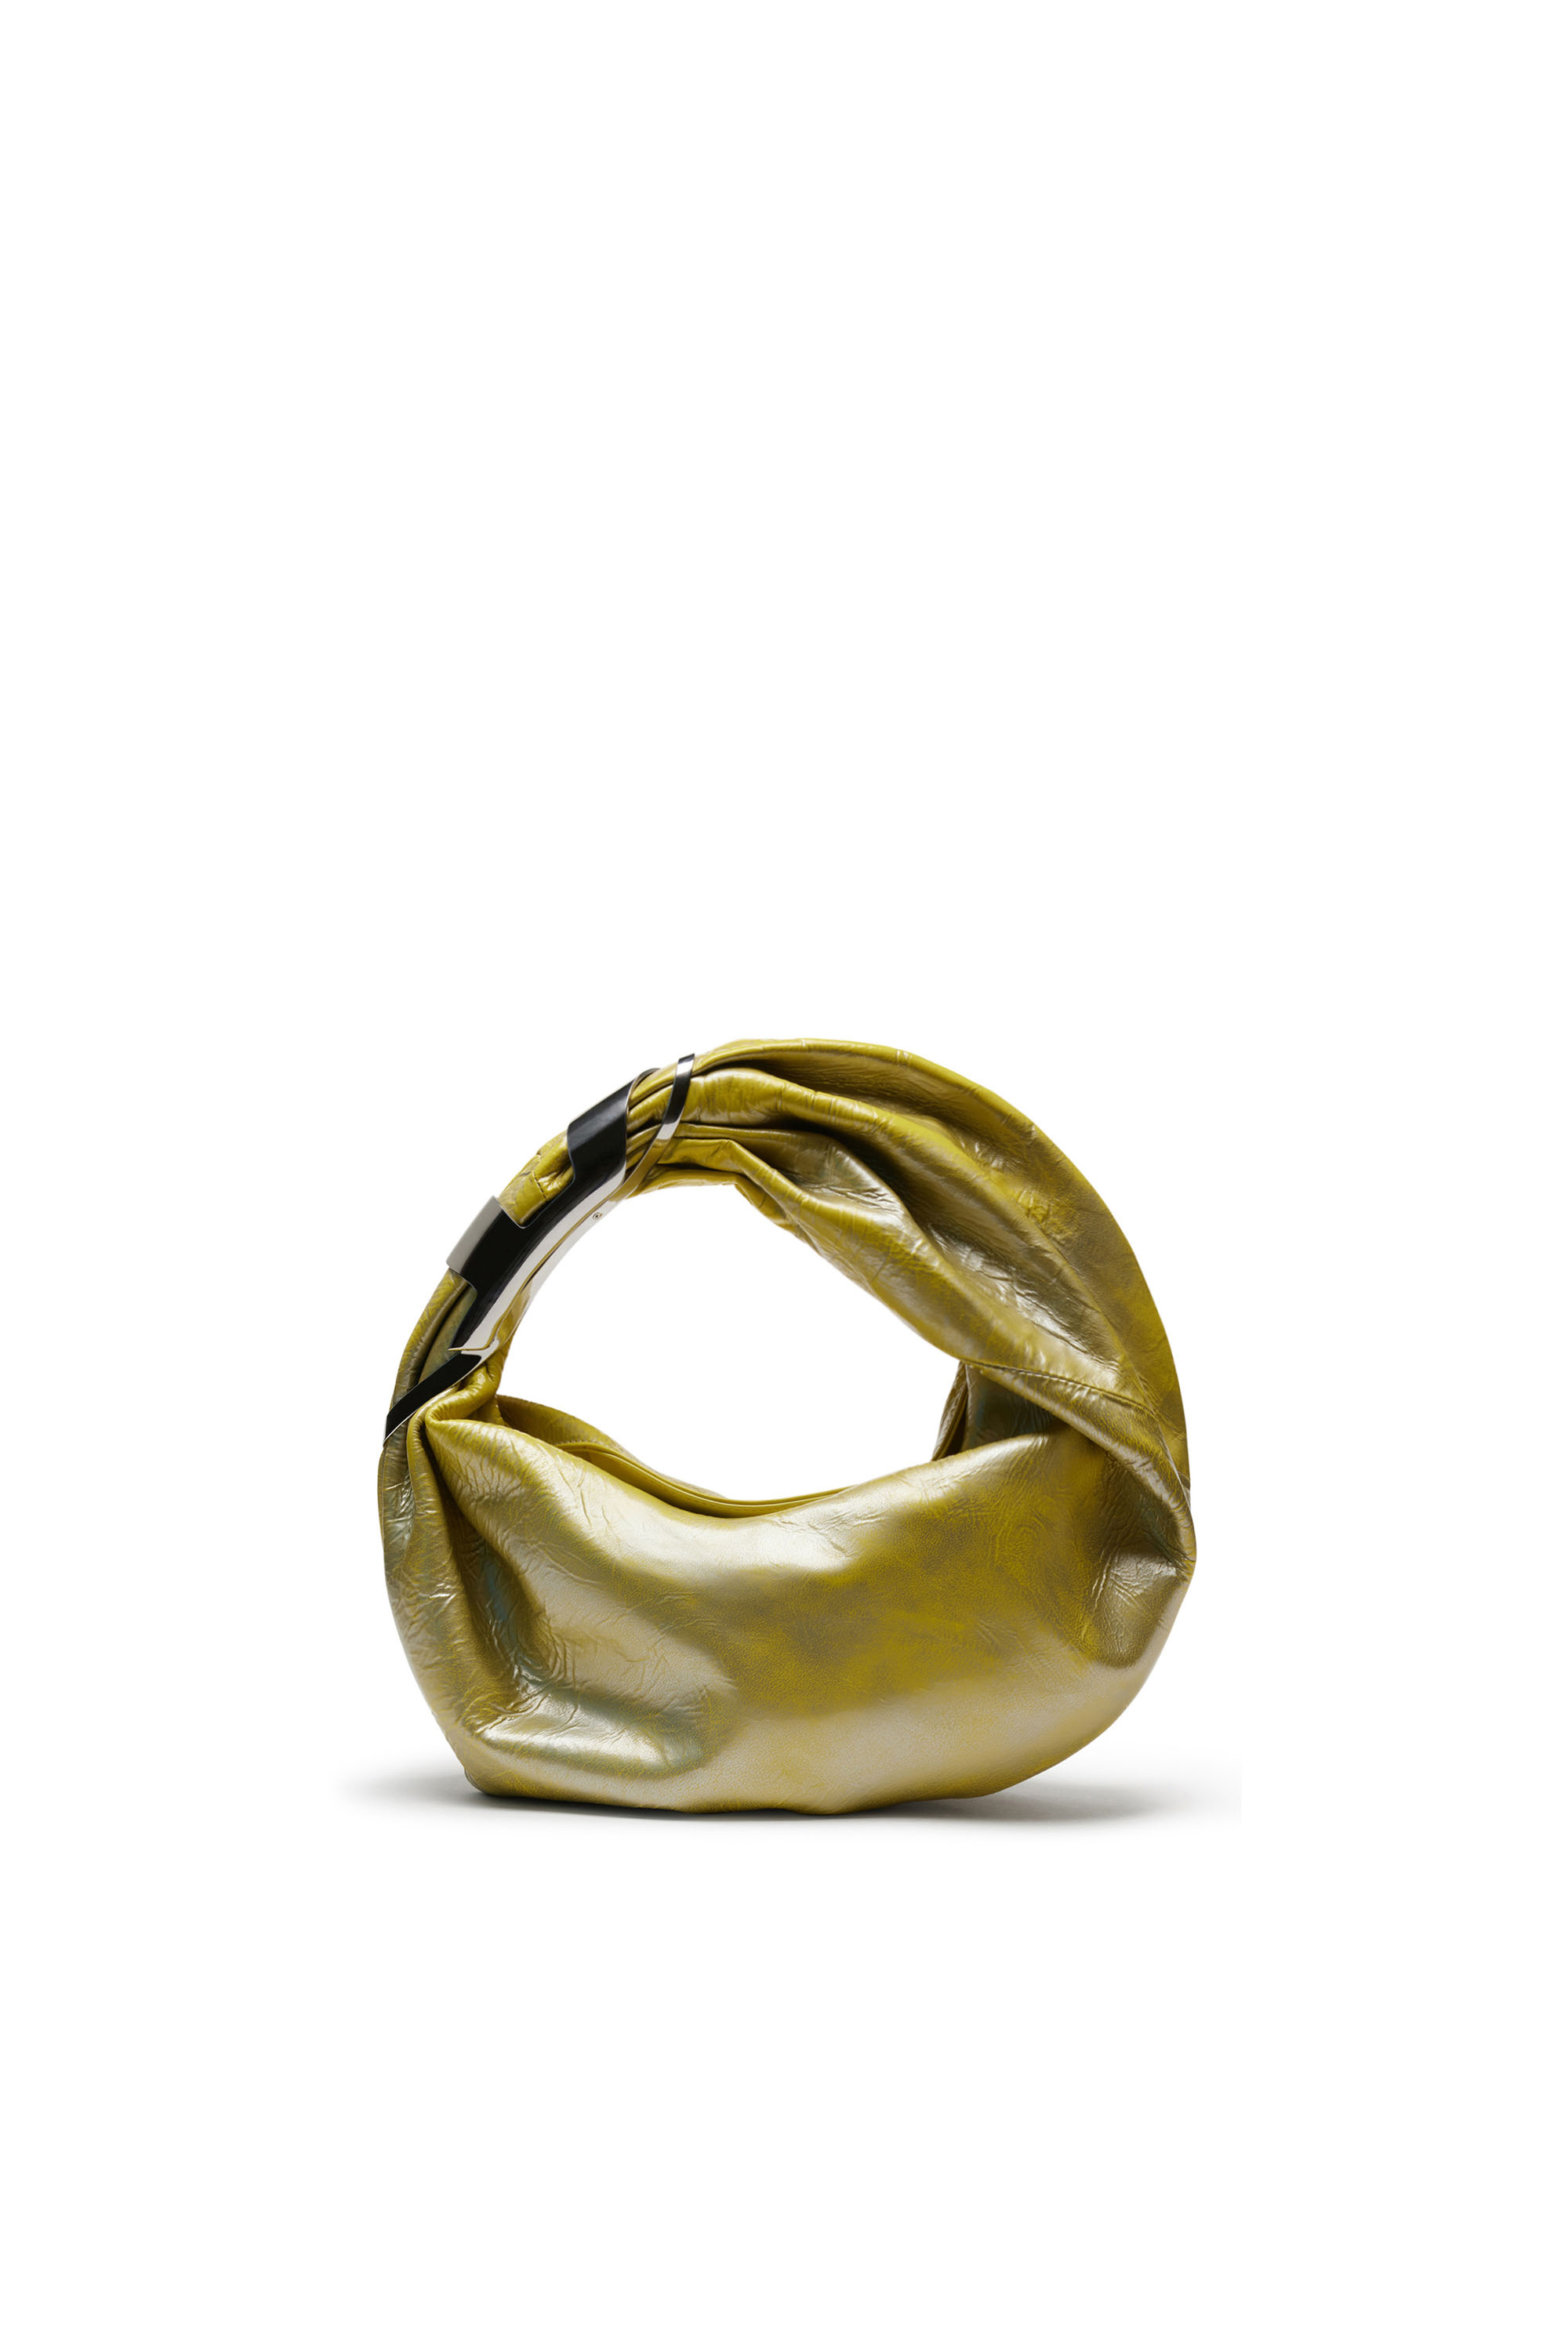 Diesel - GRAB-D HOBO S, Female Grab-D S-Hobo bag in metallic leather in イエロー - Image 1